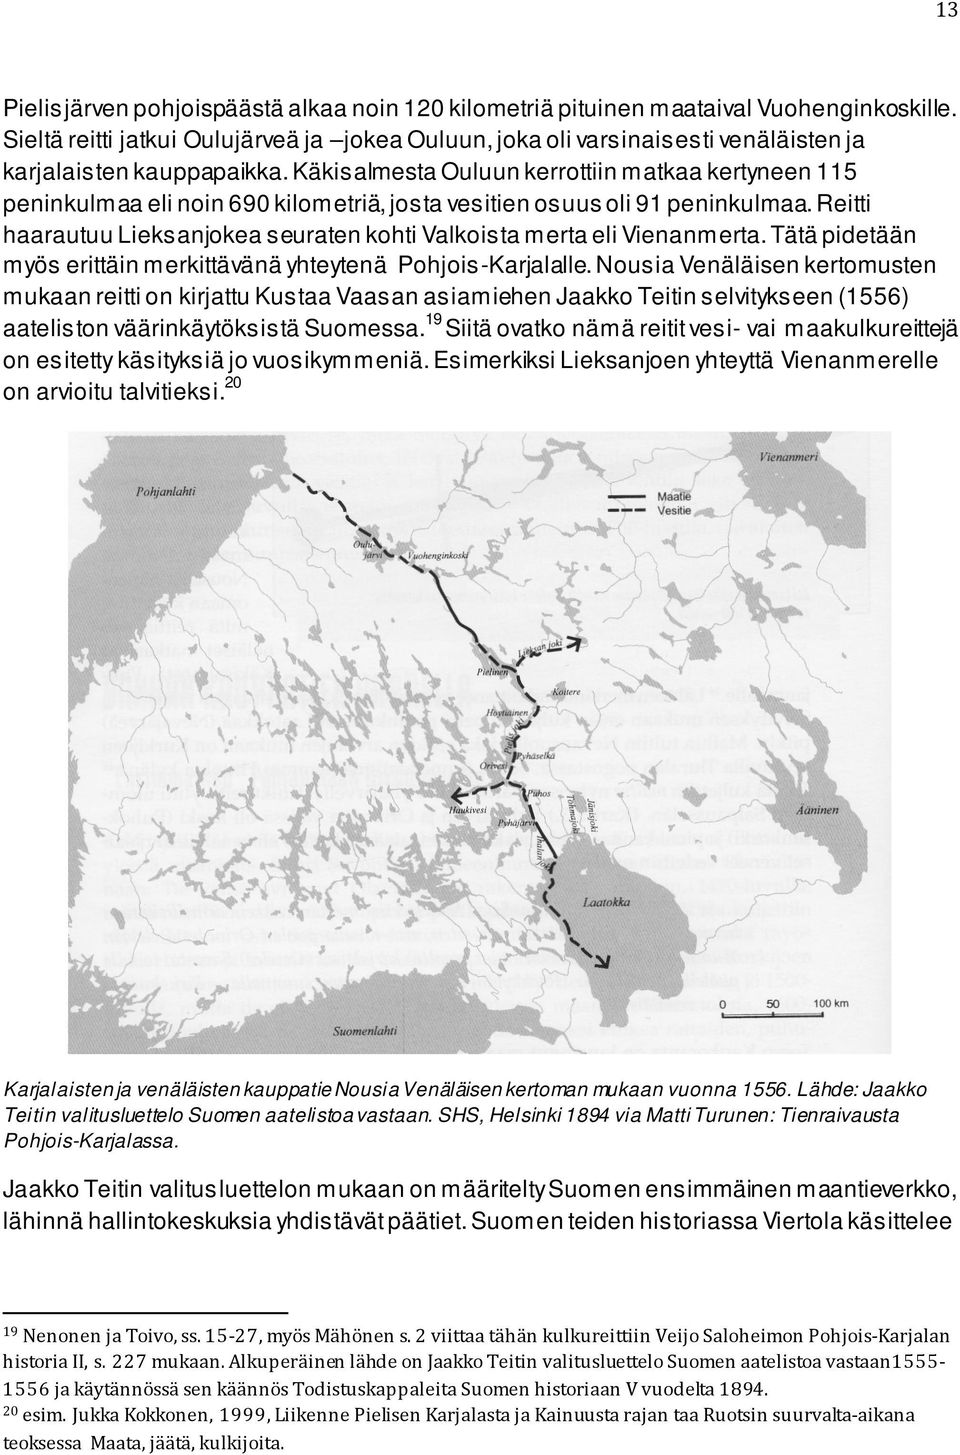 Käkisalmesta Ouluun kerrottiin matkaa kertyneen 115 peninkulmaa eli noin 690 kilometriä, josta vesitien osuus oli 91 peninkulmaa.